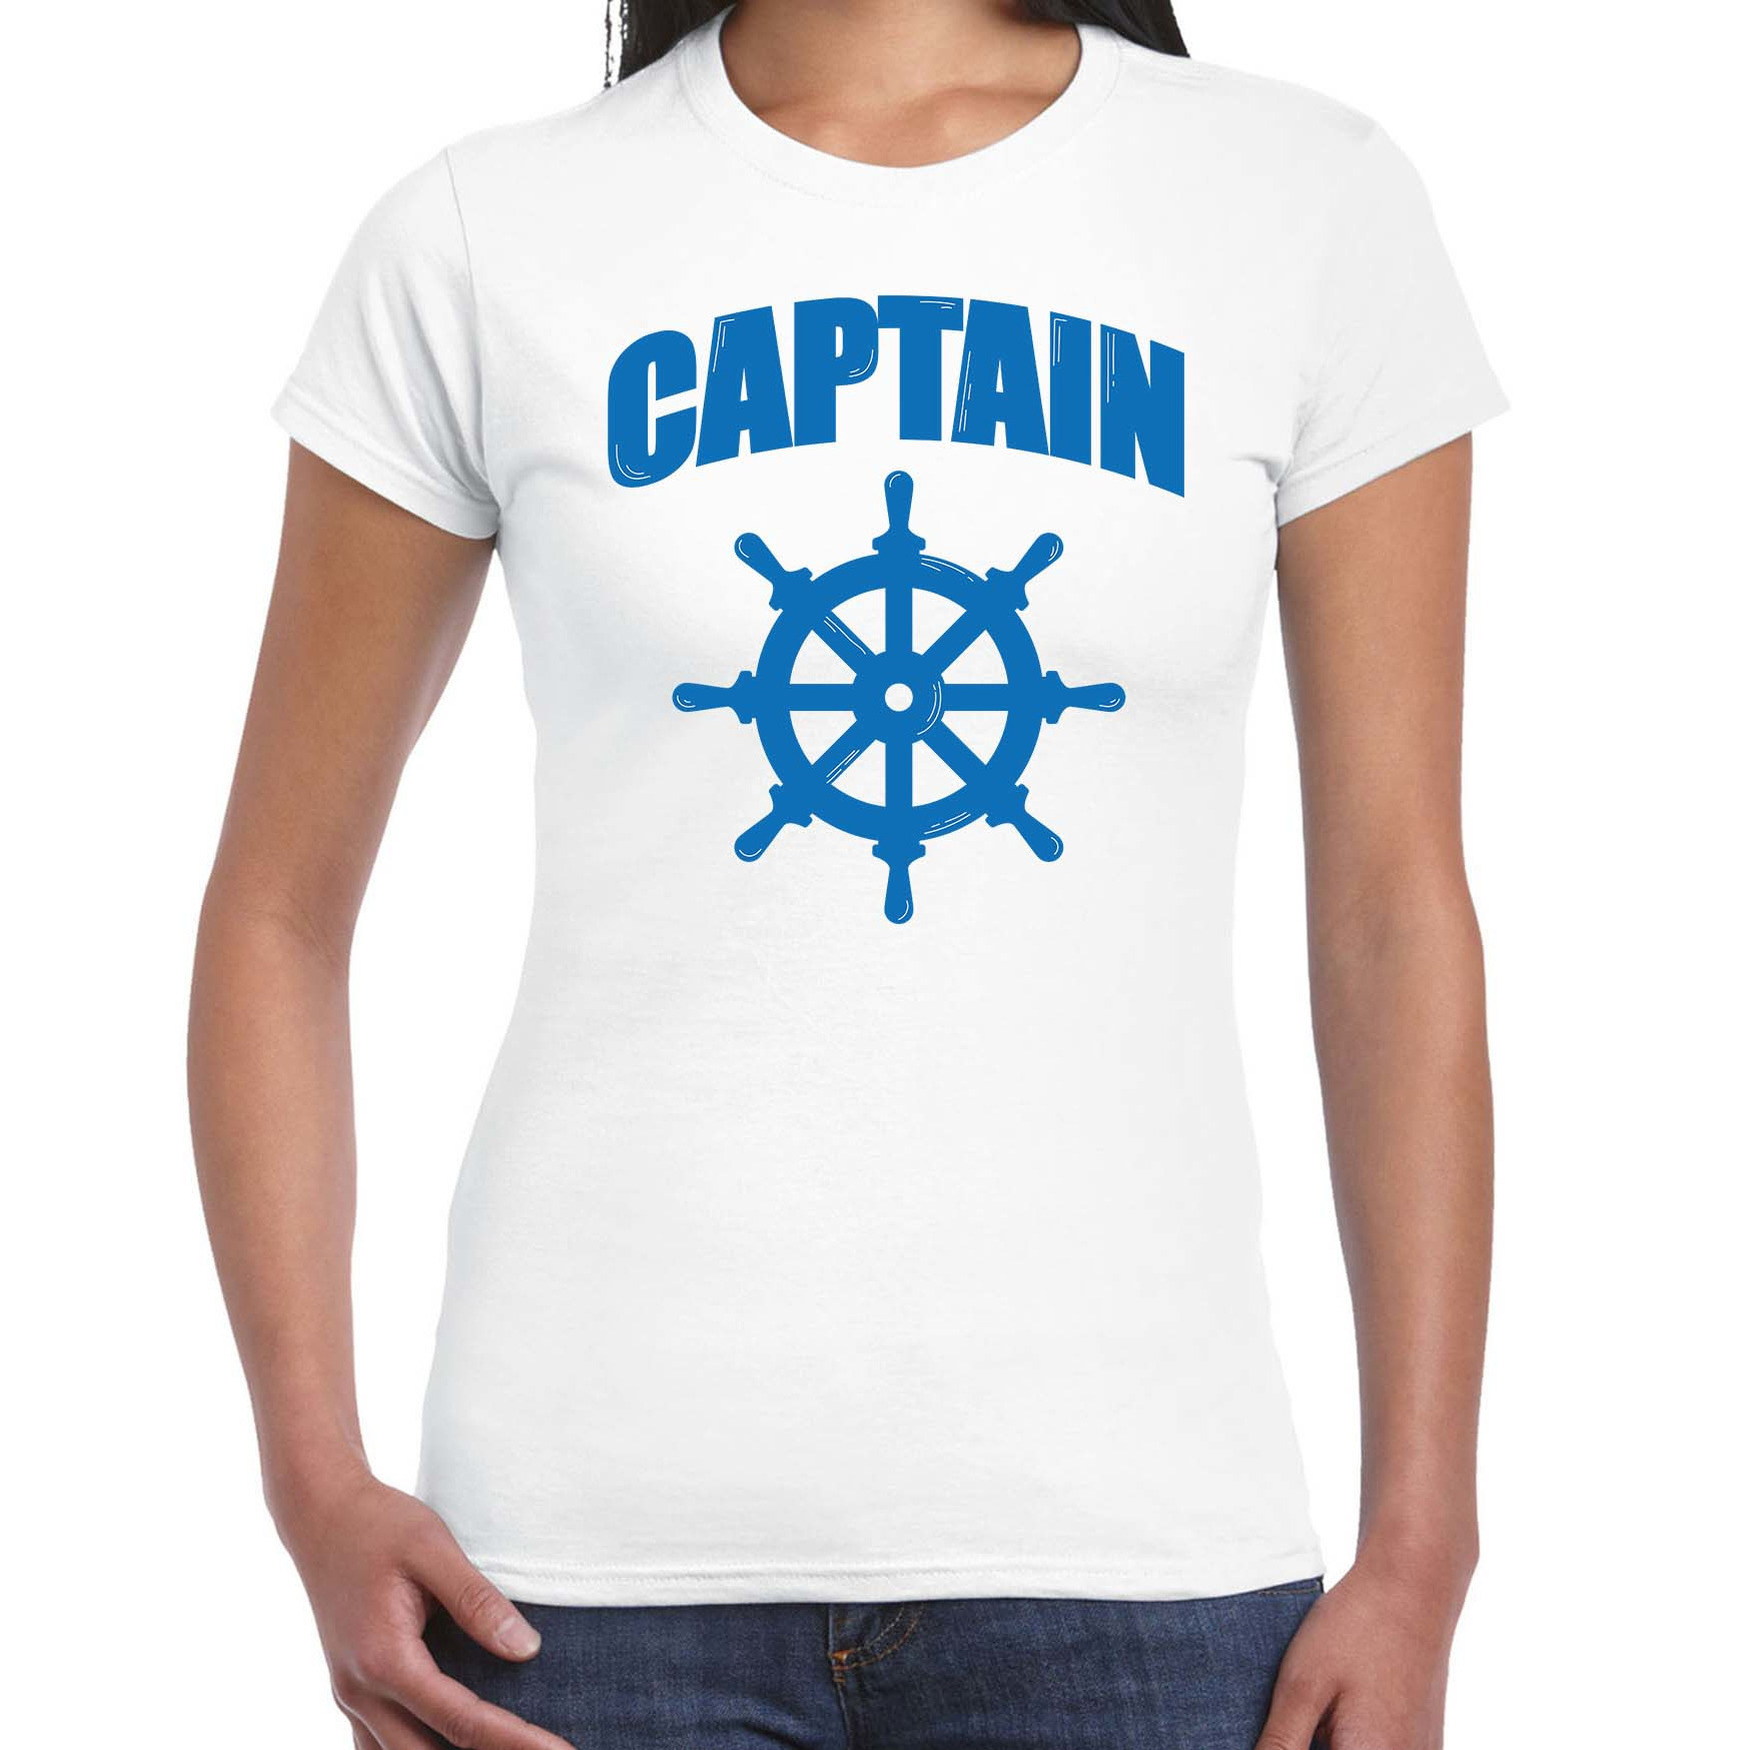 Captain-kapitein met roer-stuur verkleed t-shirt wit voor dames